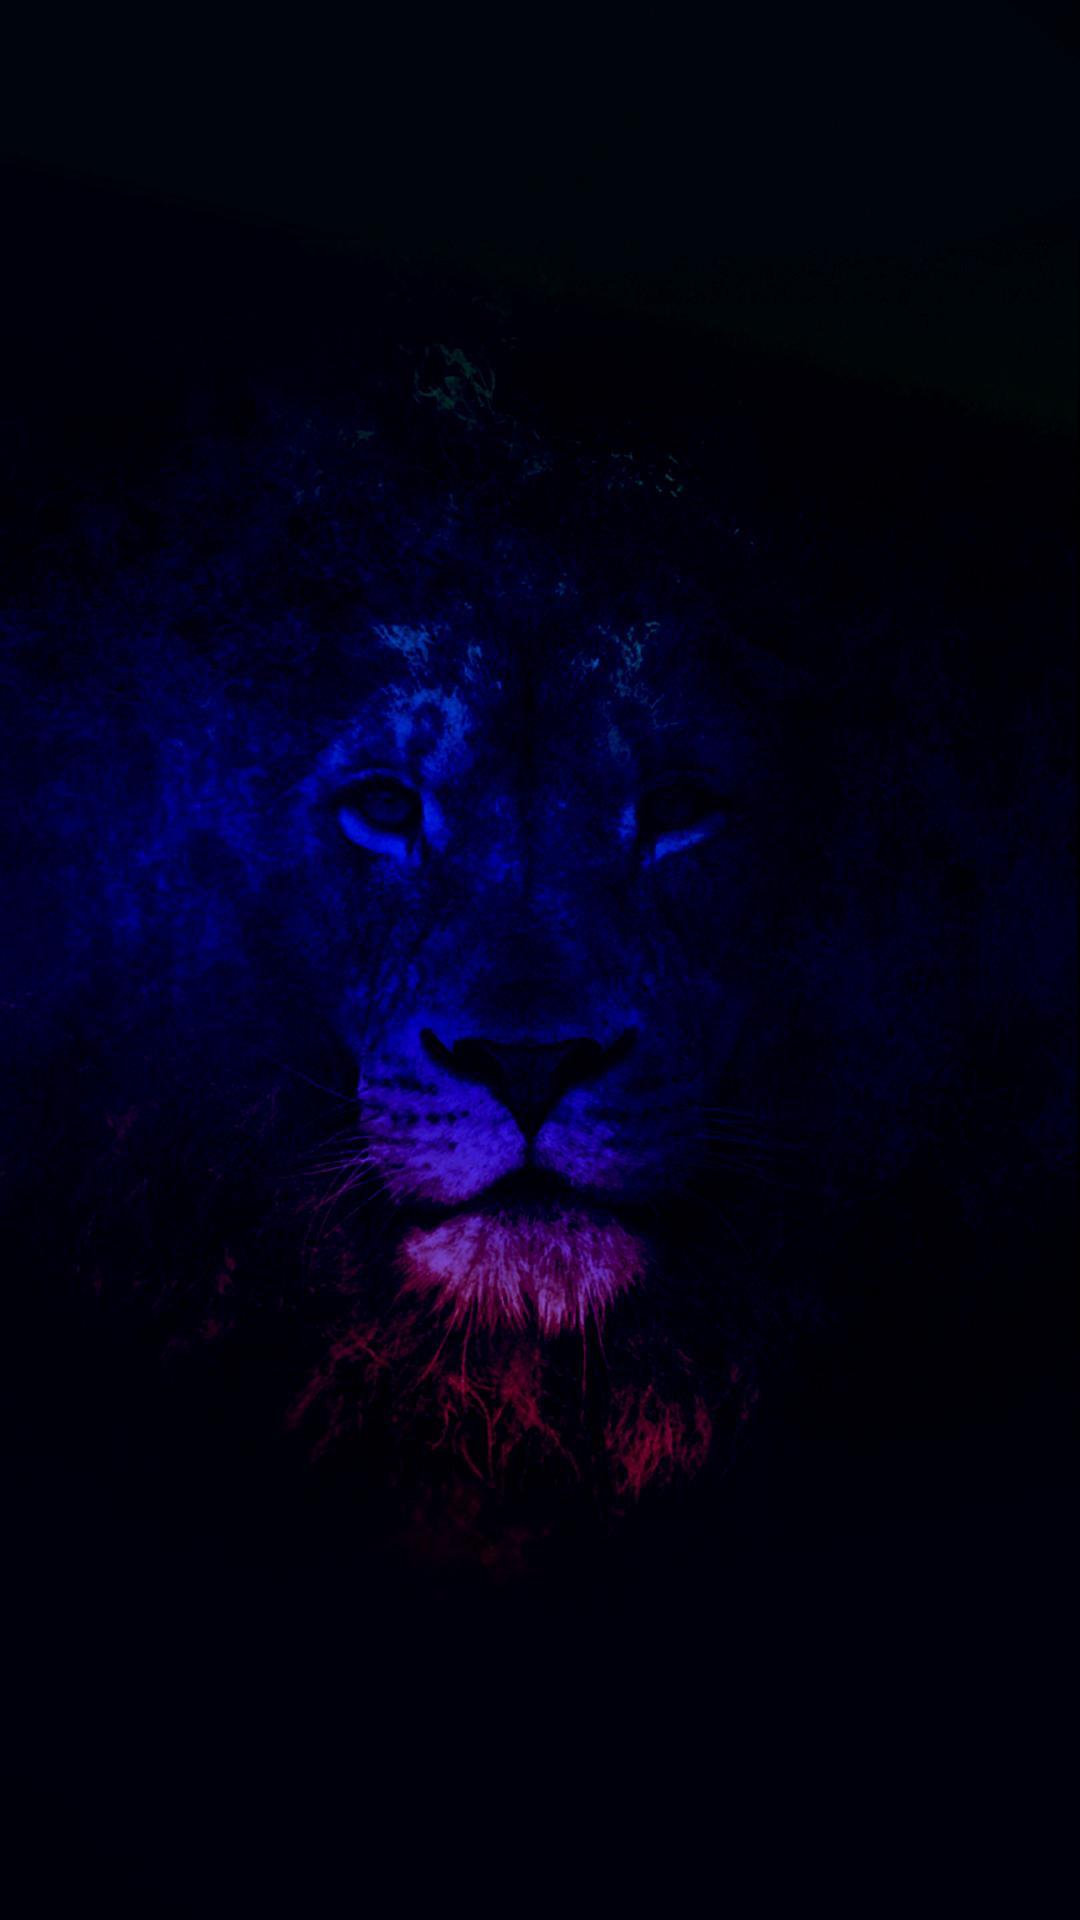 Black Lion HD Wallpaper